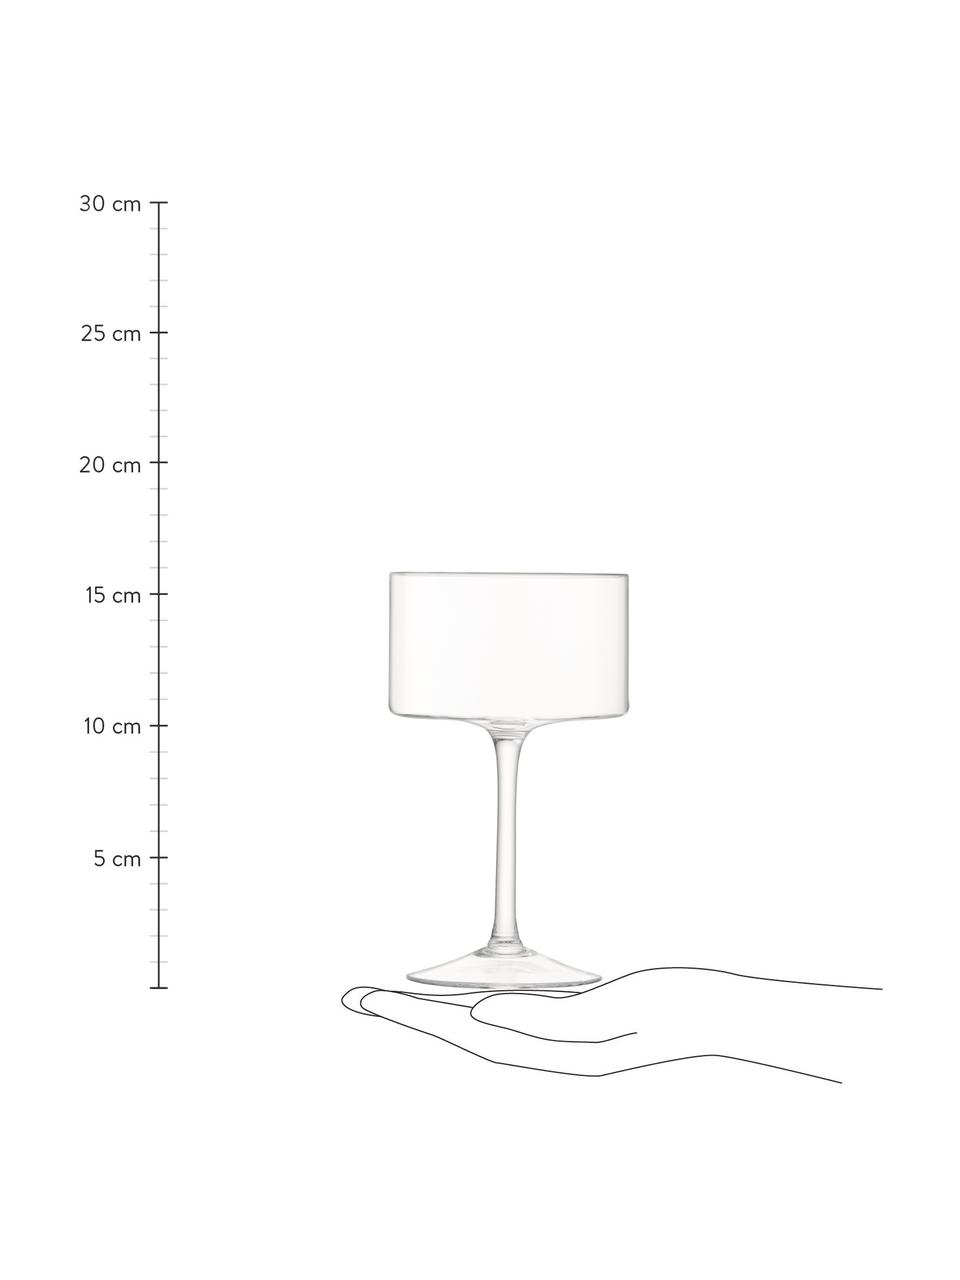 Foukané sklenice na koktejly Otis, 4 ks, Sklo, Transparentní, Ø 10 cm, V 16 cm, 280 ml